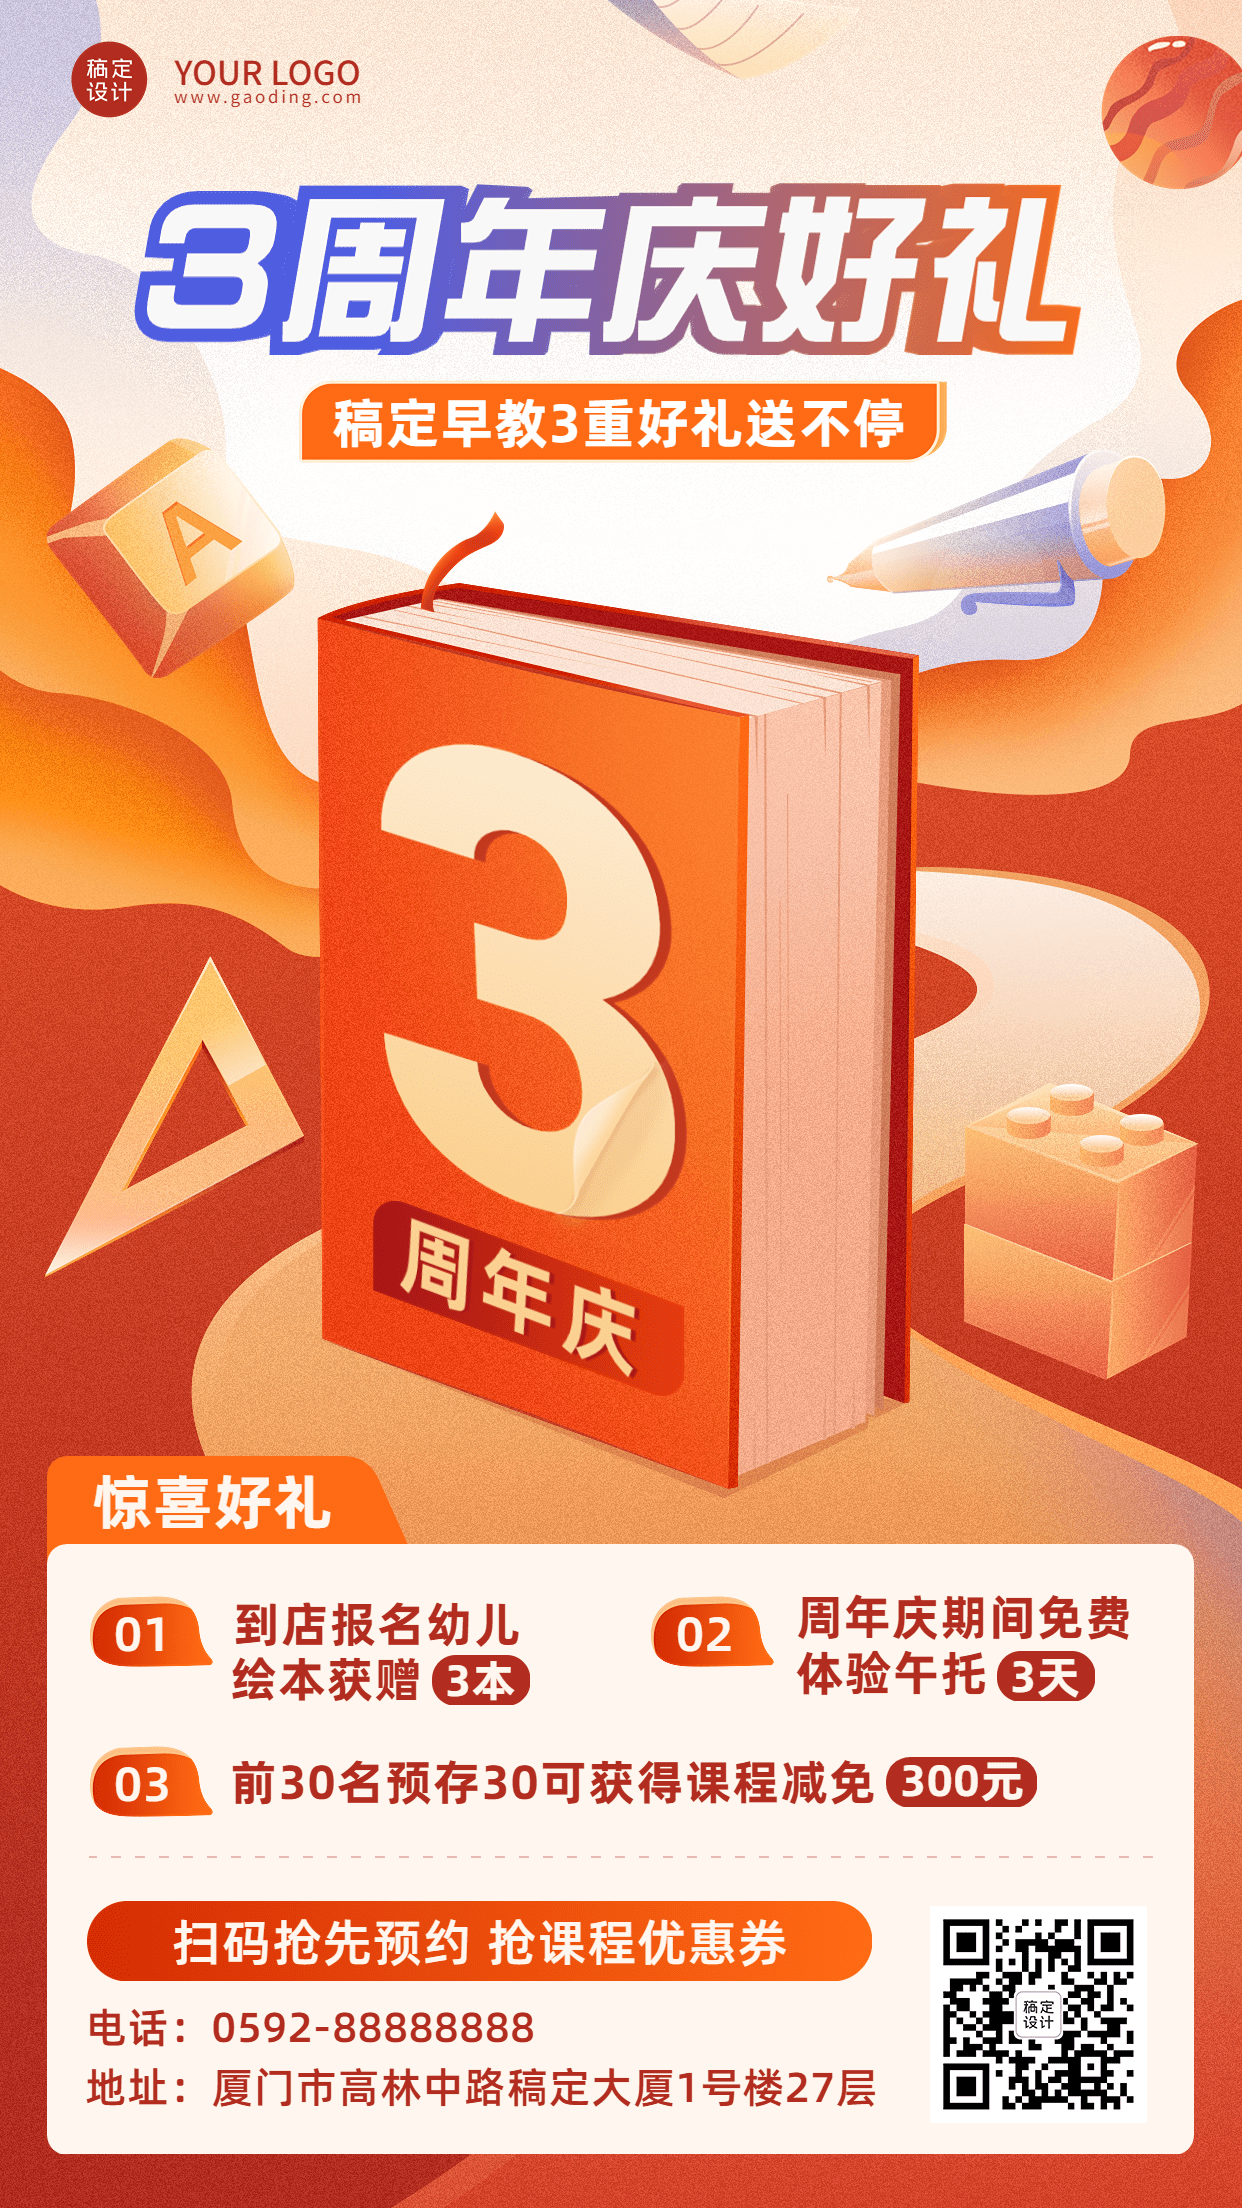 教育机构周年店庆招生促销活动插画手机海报